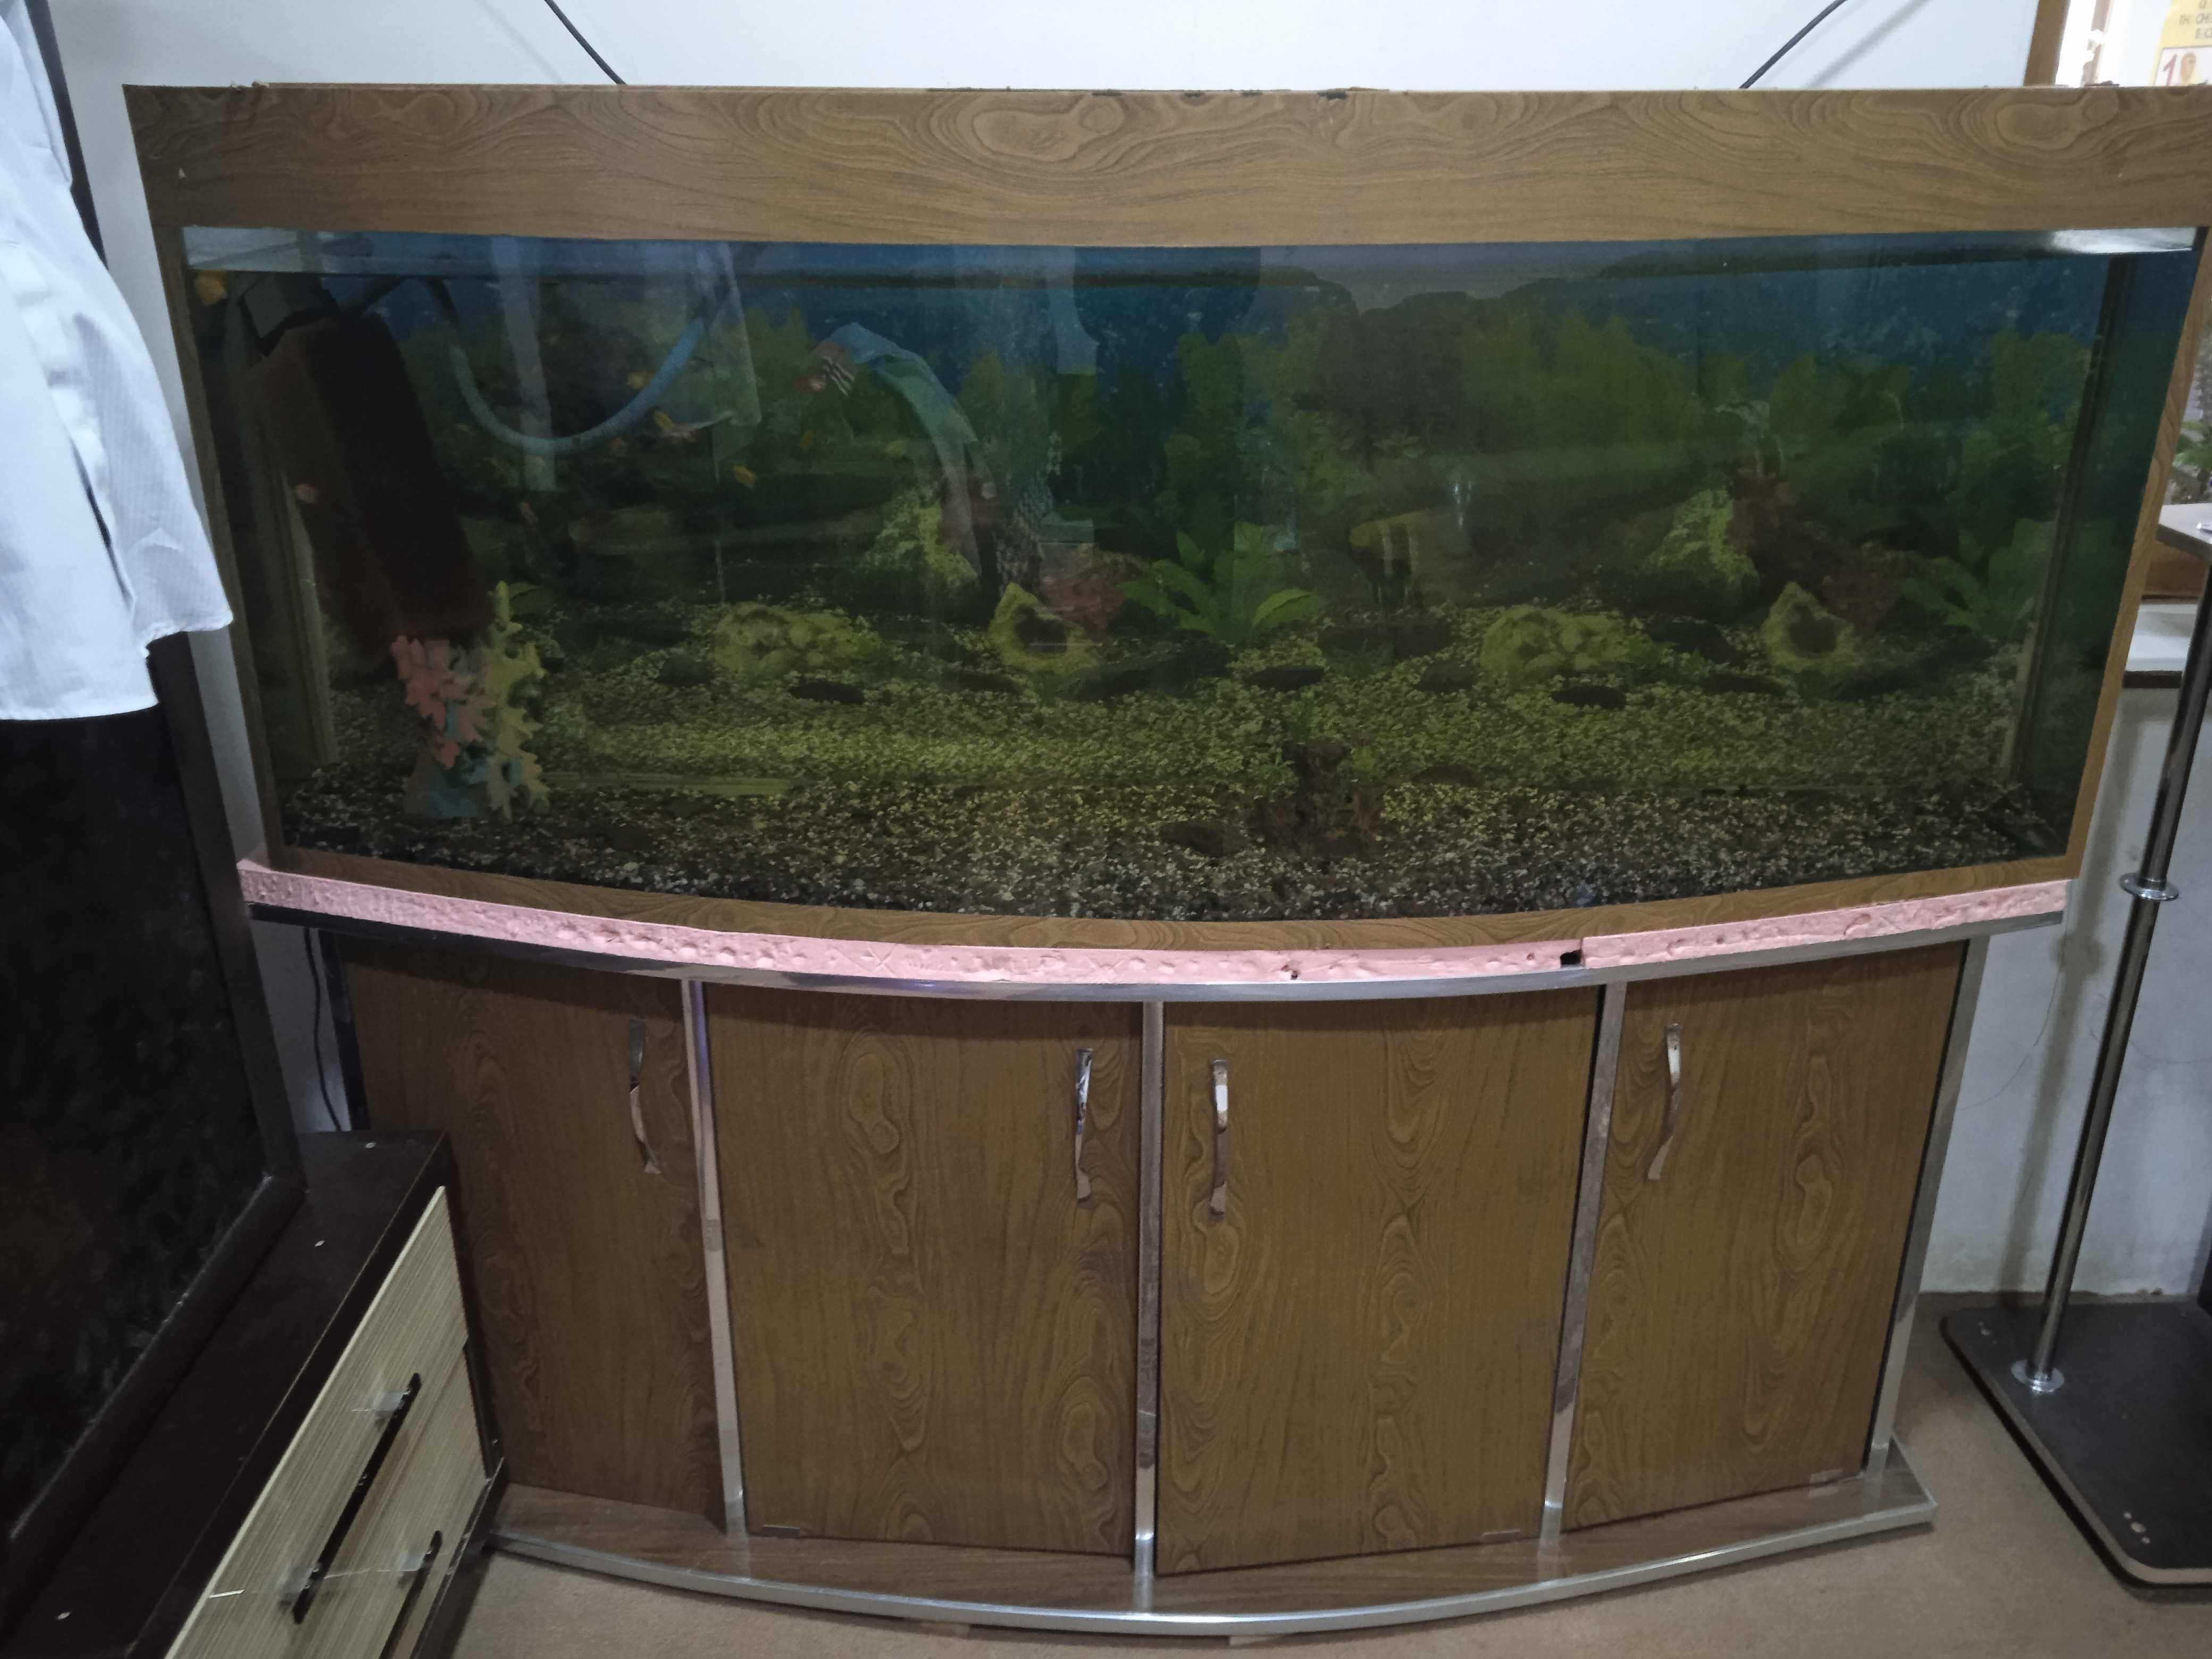 Akvarium 2,5 3metr.1metr balanlig
Tumbochkasiyam bor.35ta baligi bor